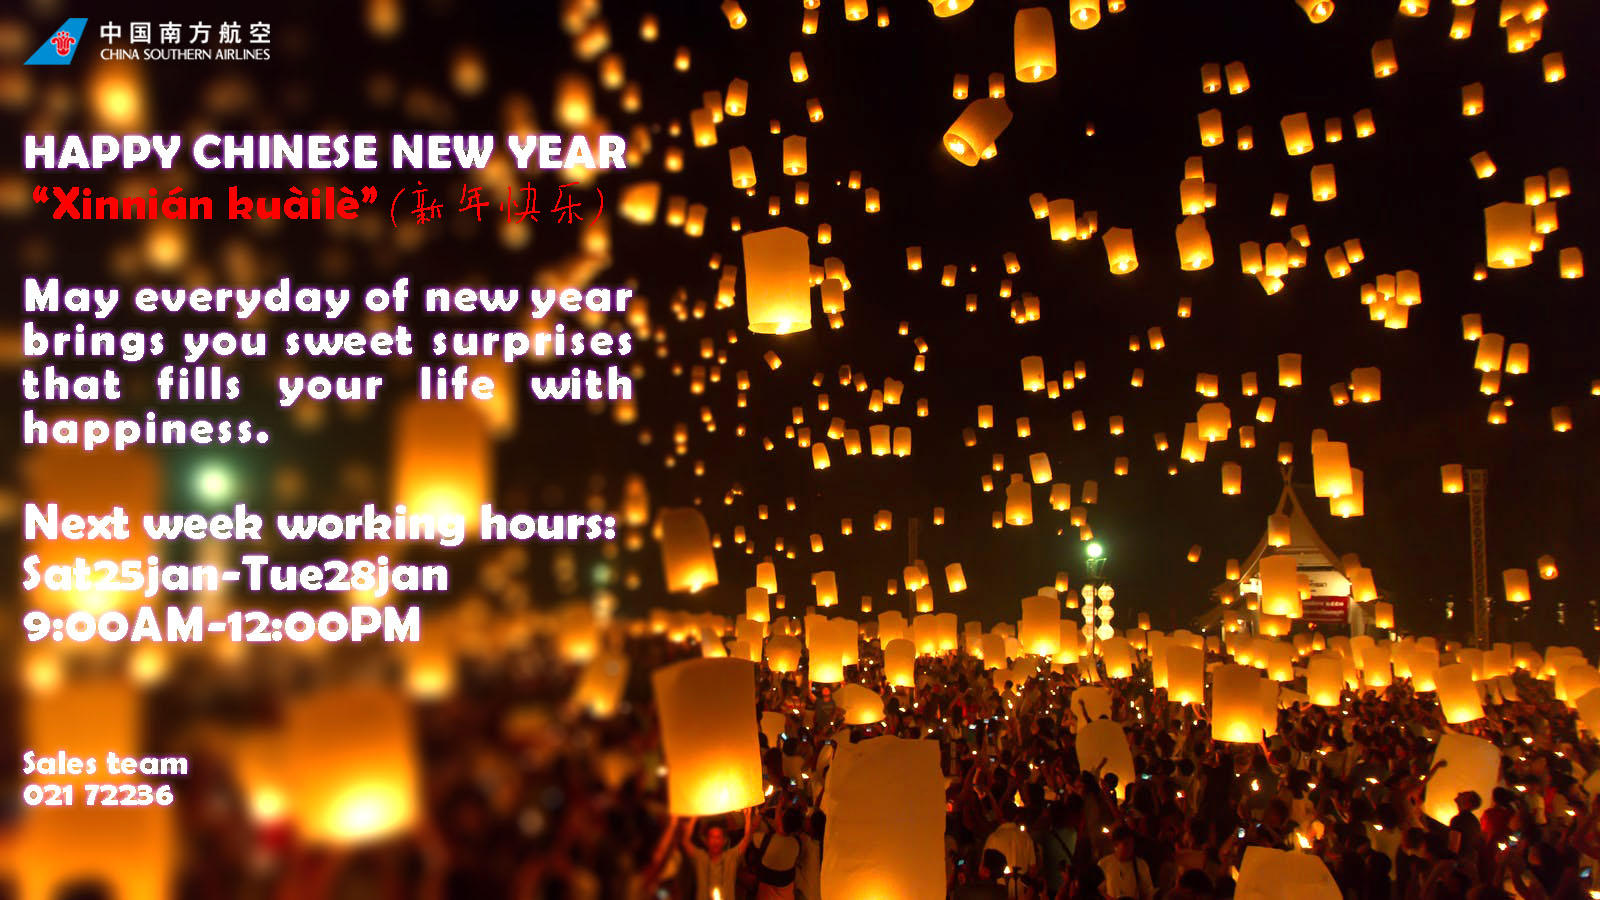 بخشنامه و اطلاعیه   هواپیمایی چاینا ساترن درباره تبریک سال نو چینی